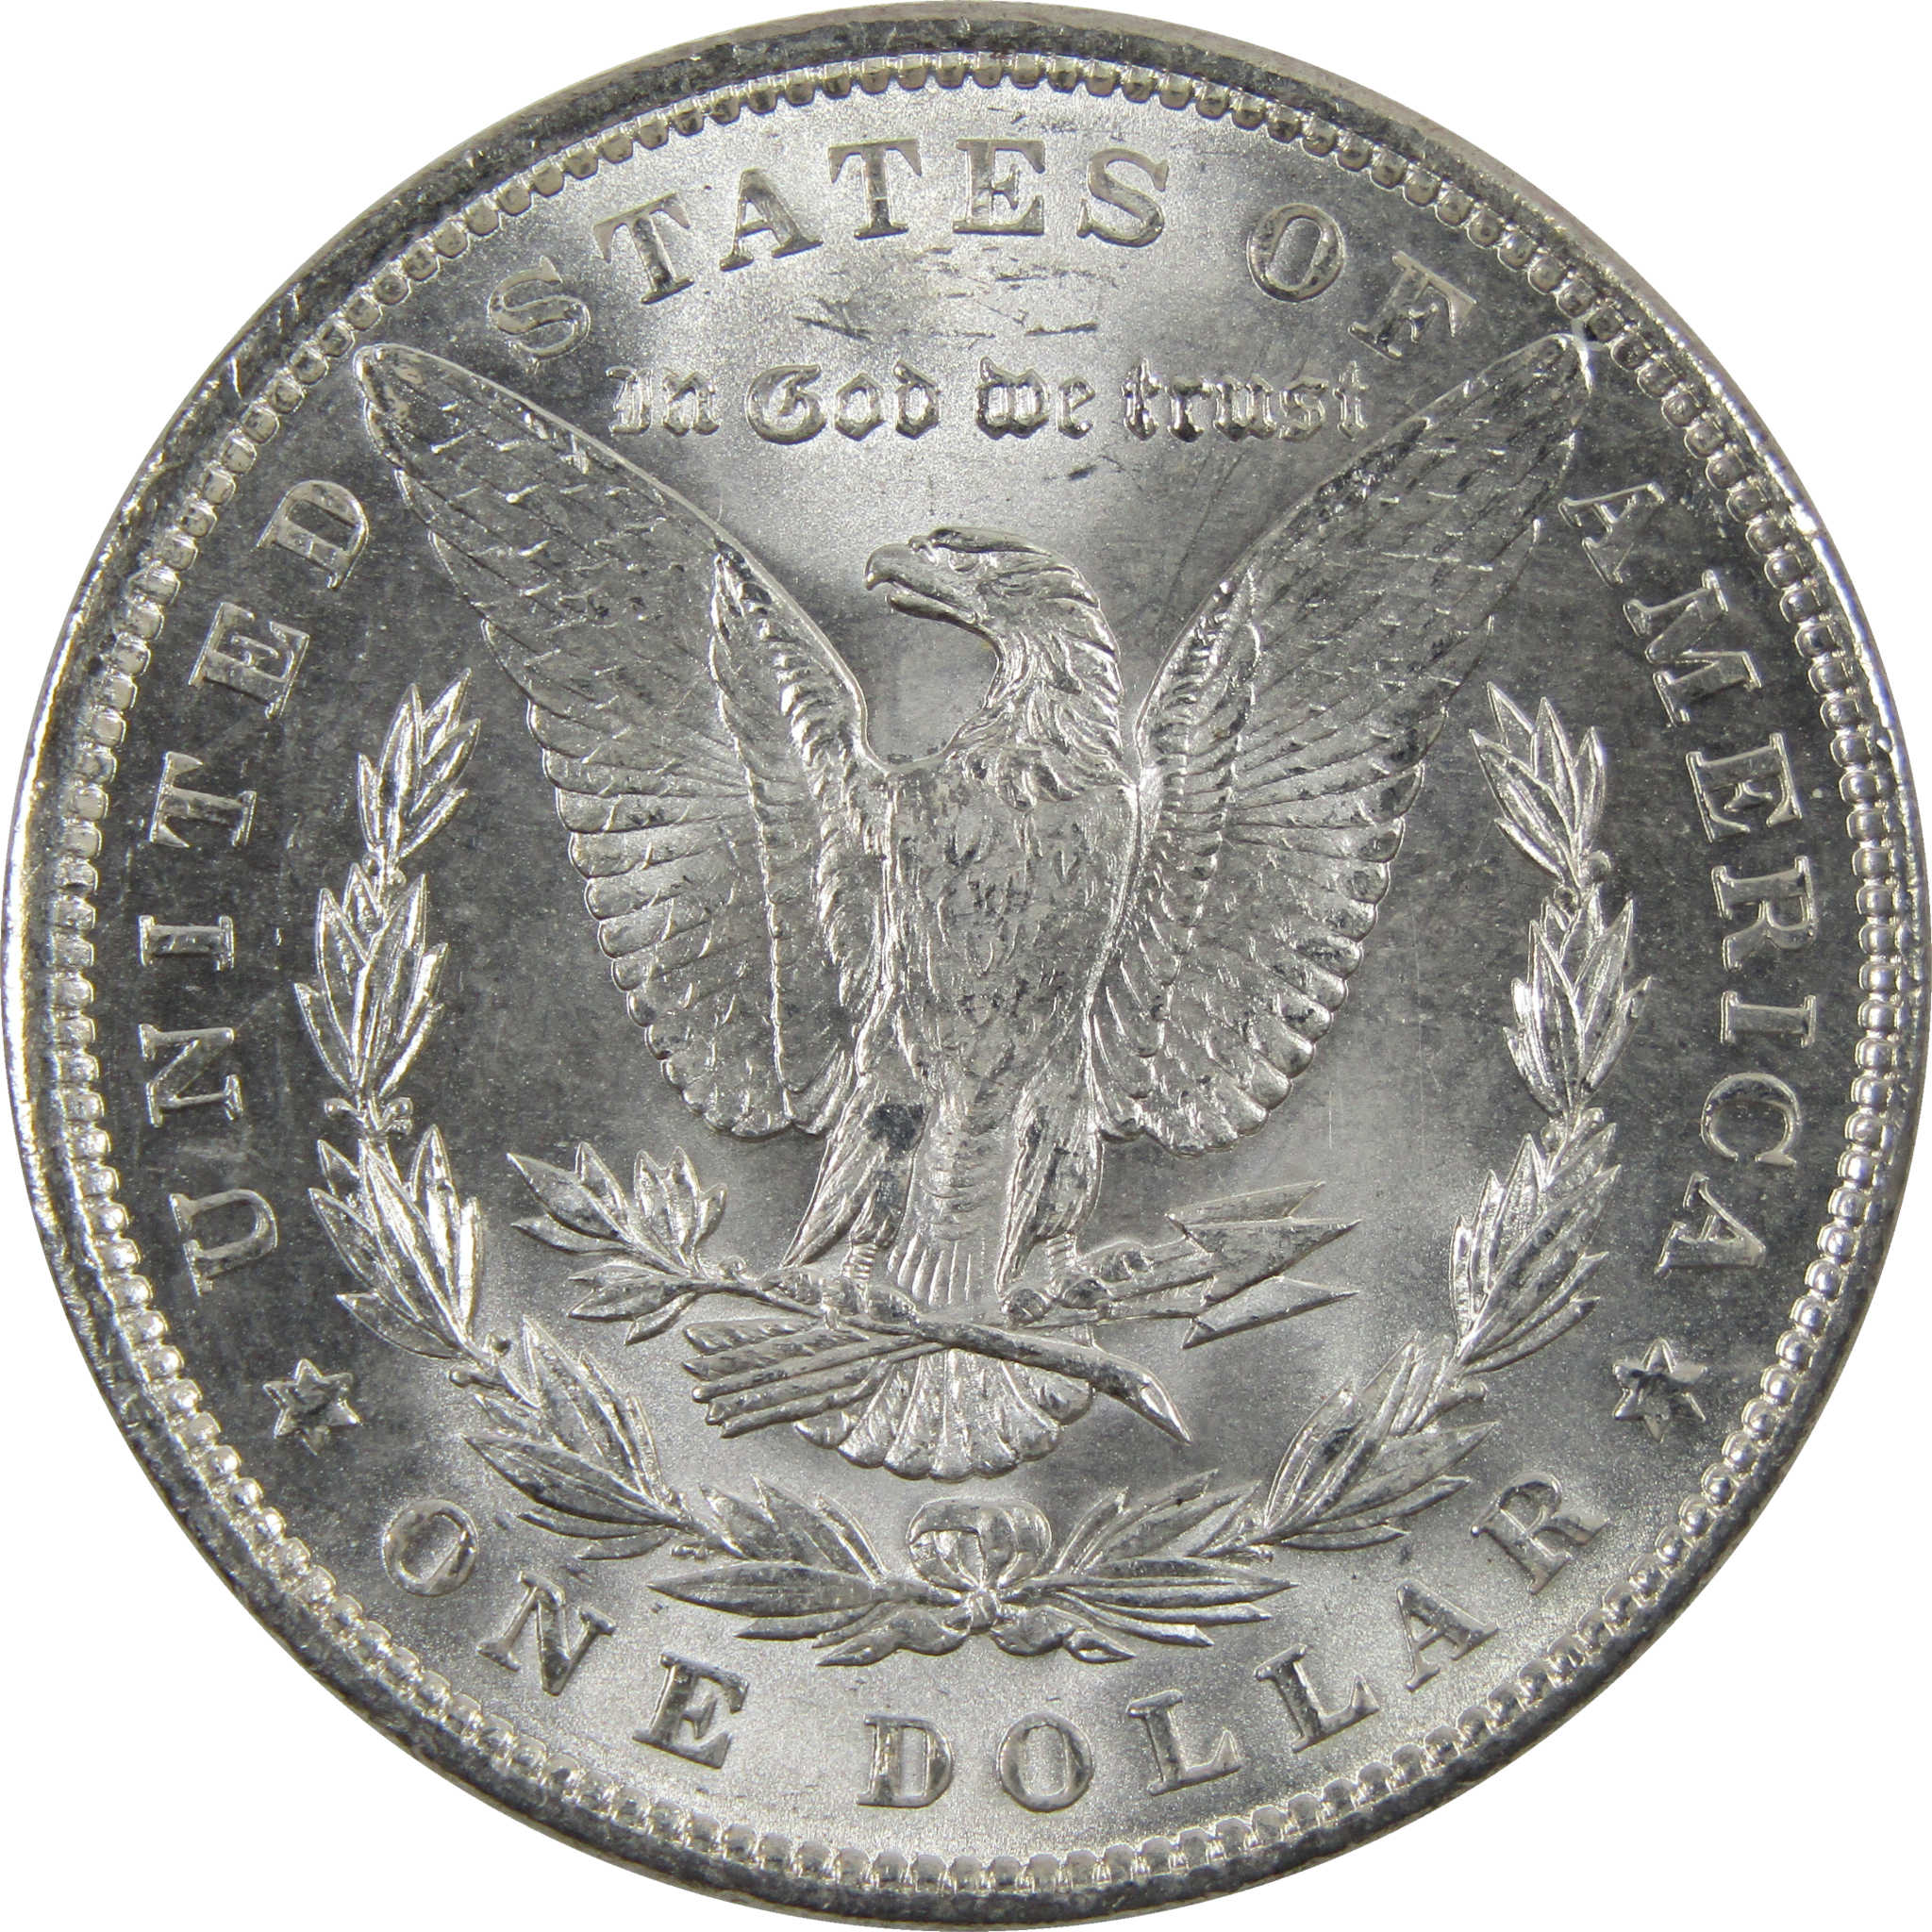 1888 Morgan Dollar BU Uncirculated 90% Silver $1 Coin SKU:I6034 - Morgan coin - Morgan silver dollar - Morgan silver dollar for sale - Profile Coins &amp; Collectibles